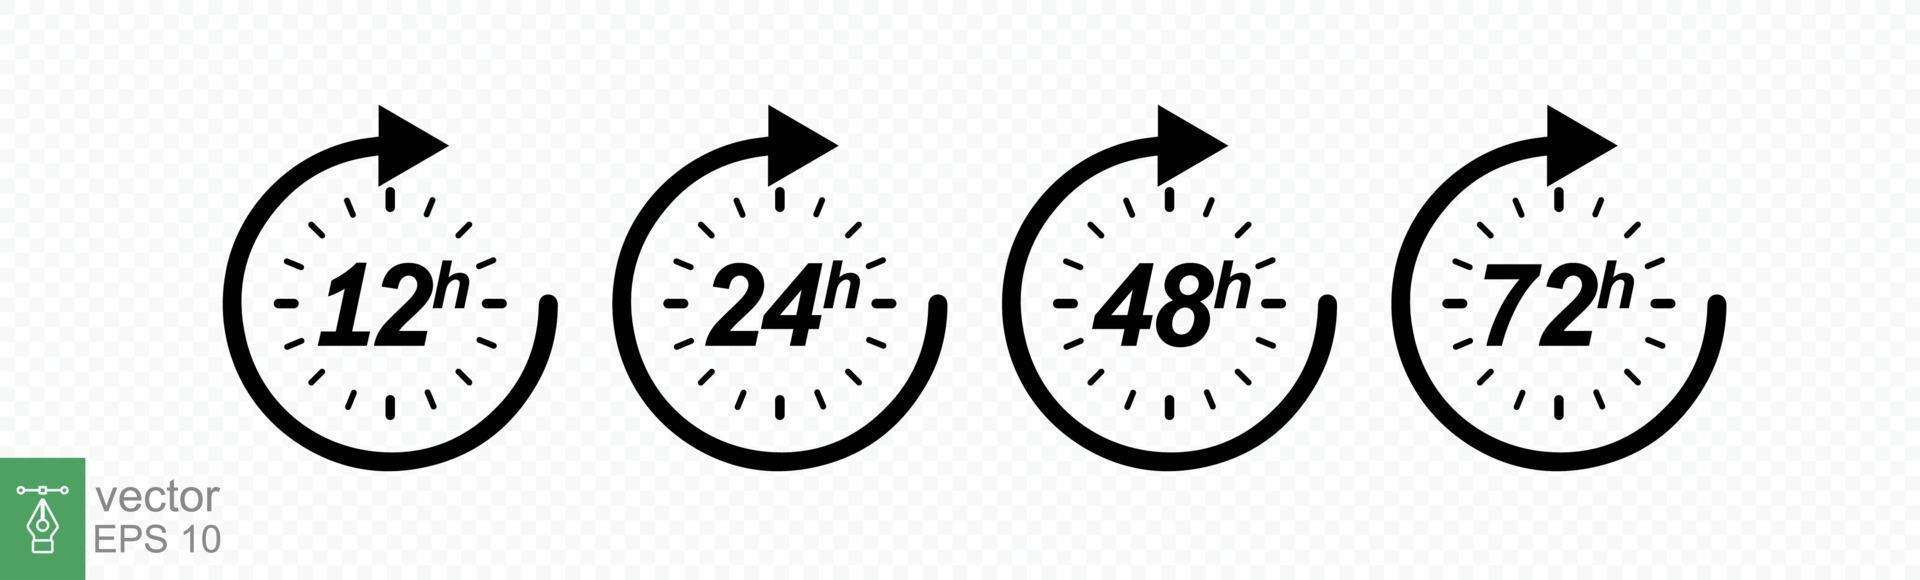 conjunto de iconos de hora. Flecha de reloj de 12, 24, 48 y 72 horas. entrega rápida, temporizador con flecha circular. efecto de tiempo de trabajo vectorial o iconos de tiempo de servicio de entrega. eps 10. vector